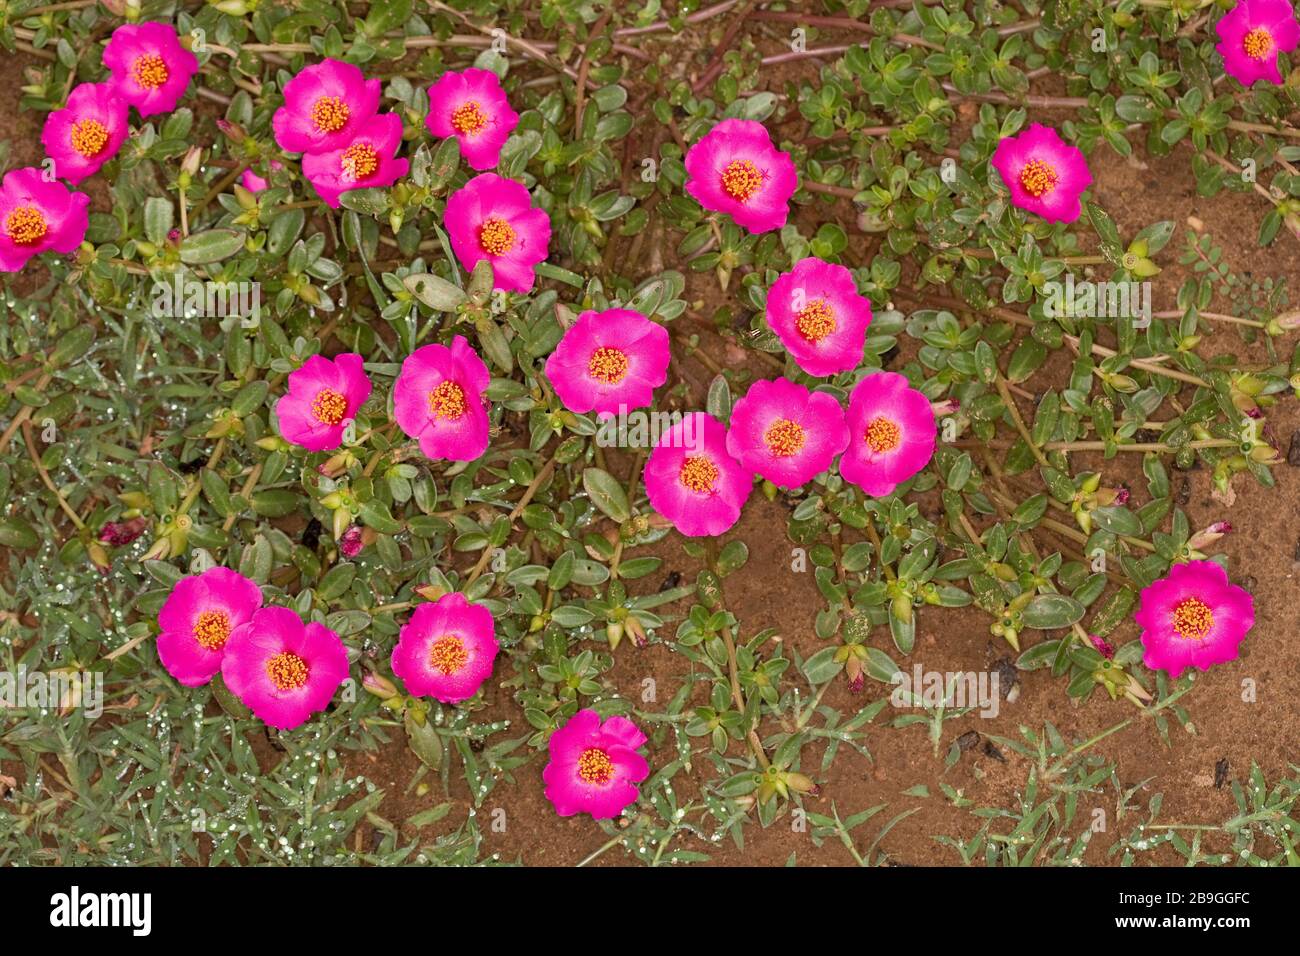 Blume, Onze-horas, Portulaca grandiflora, Miranda, Mato Grosso do Sul, Brasilien Stockfoto